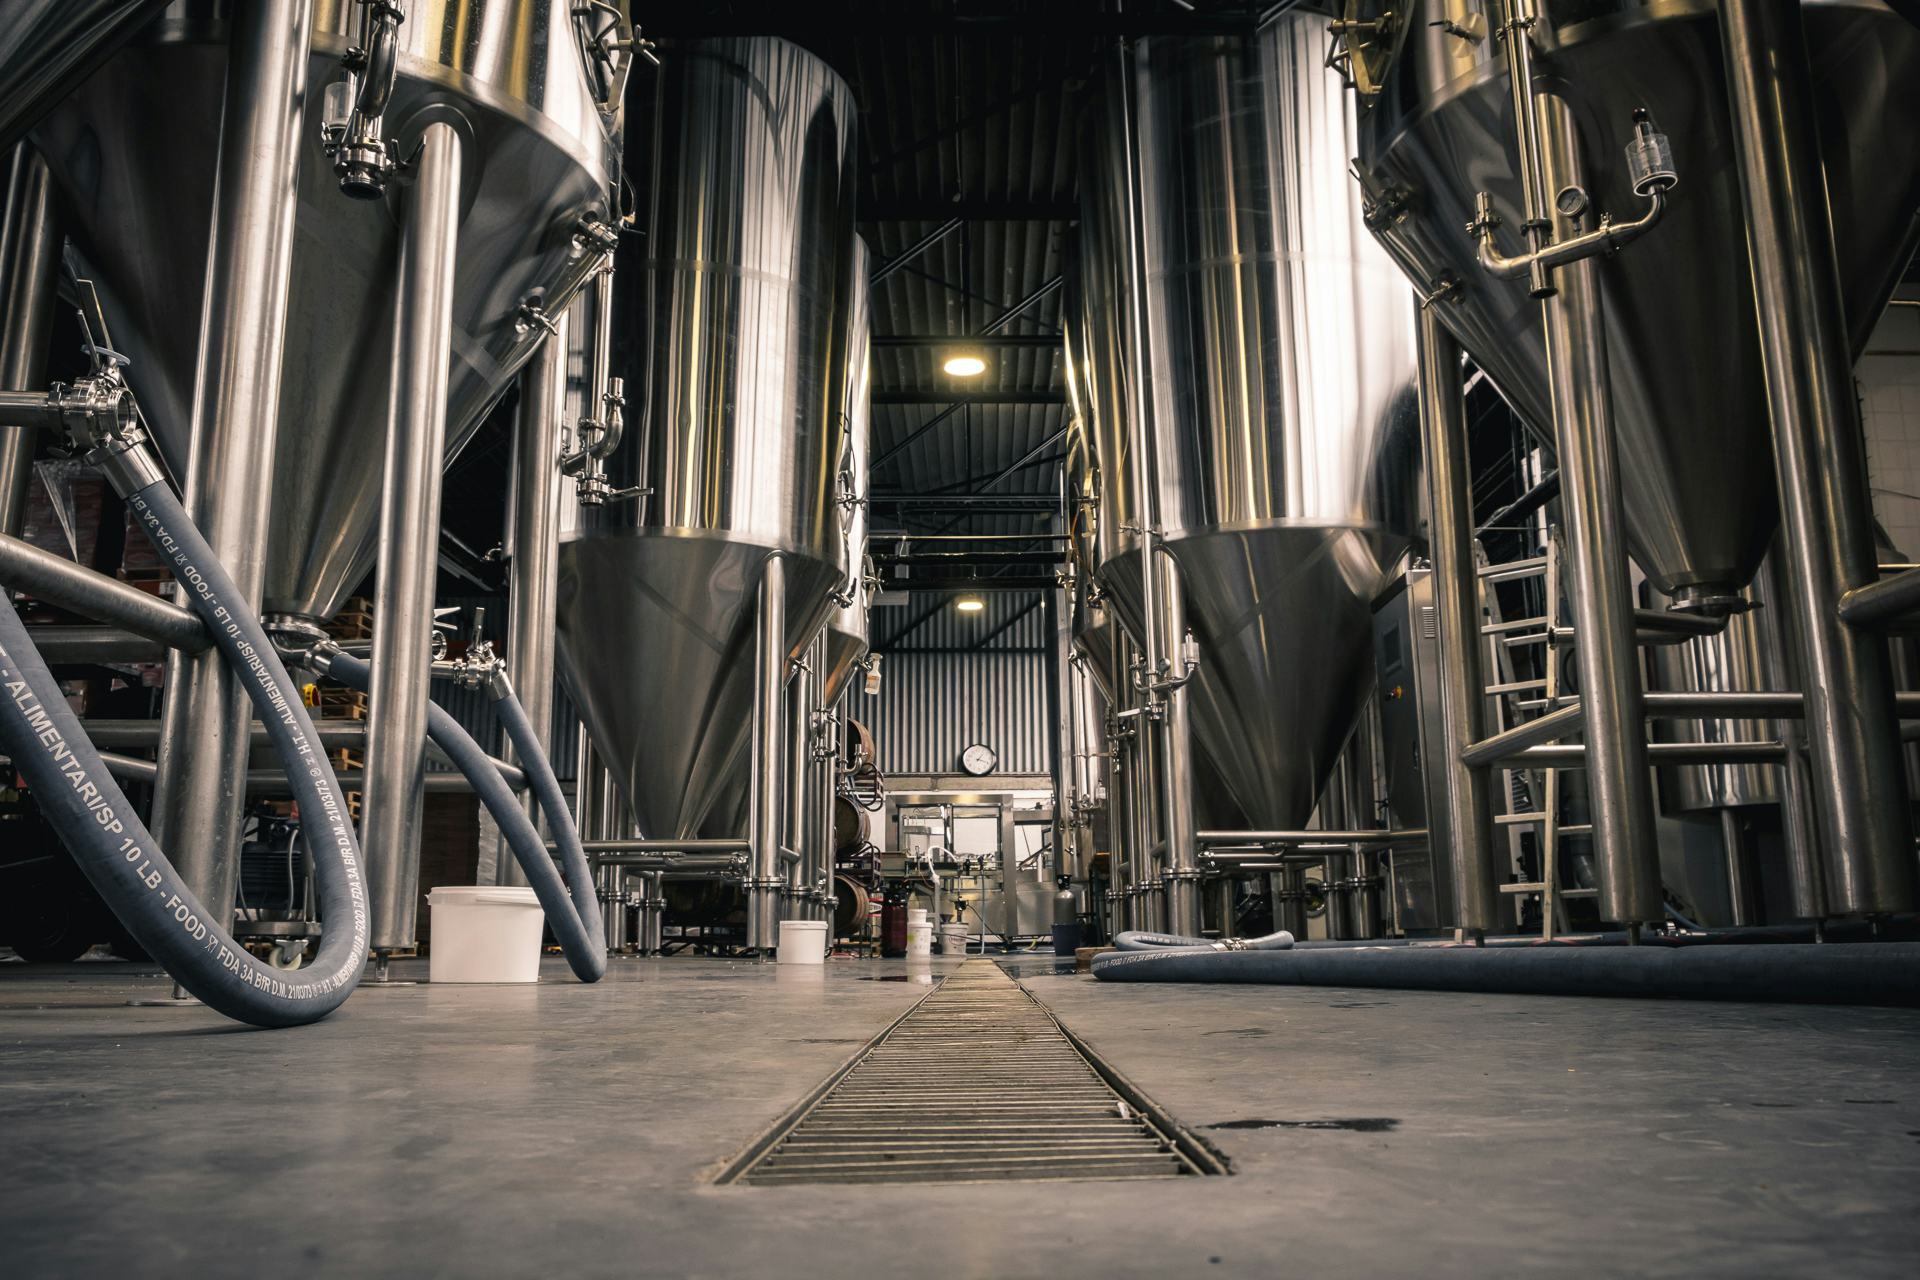 VandeStreek bier geeft virtuele tour door brouwerij